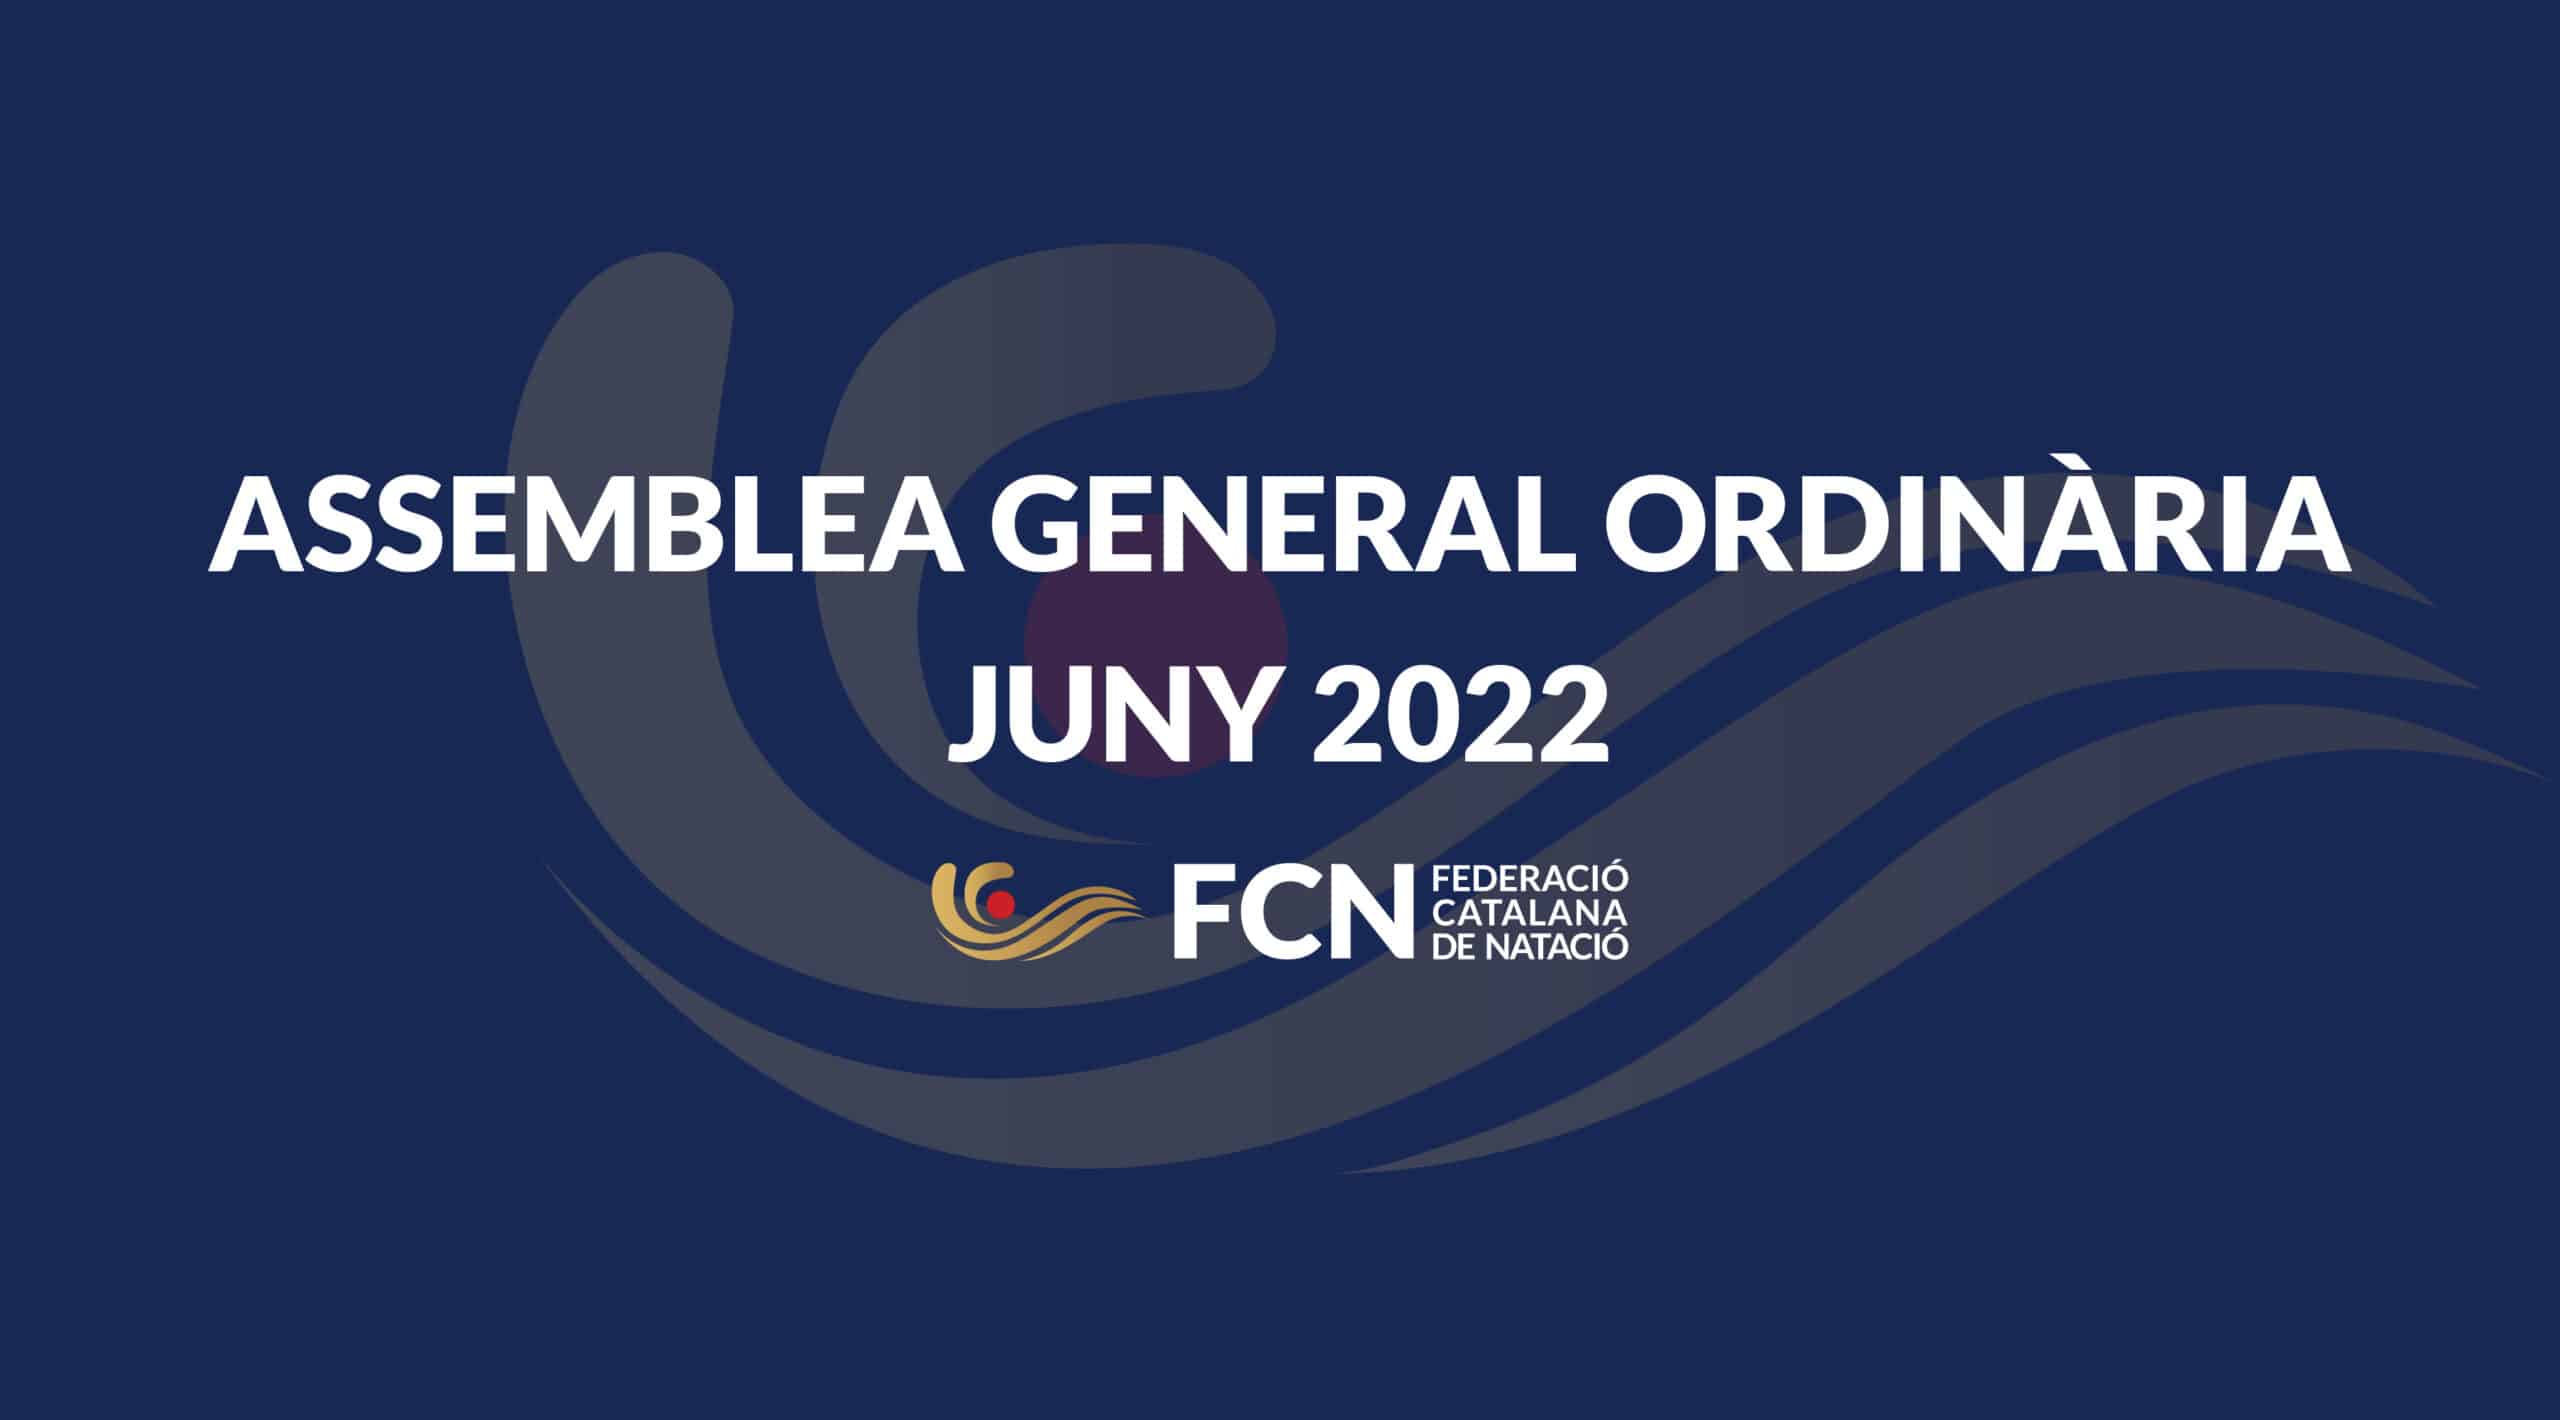 Assemblea General Ordinària Juny 2022